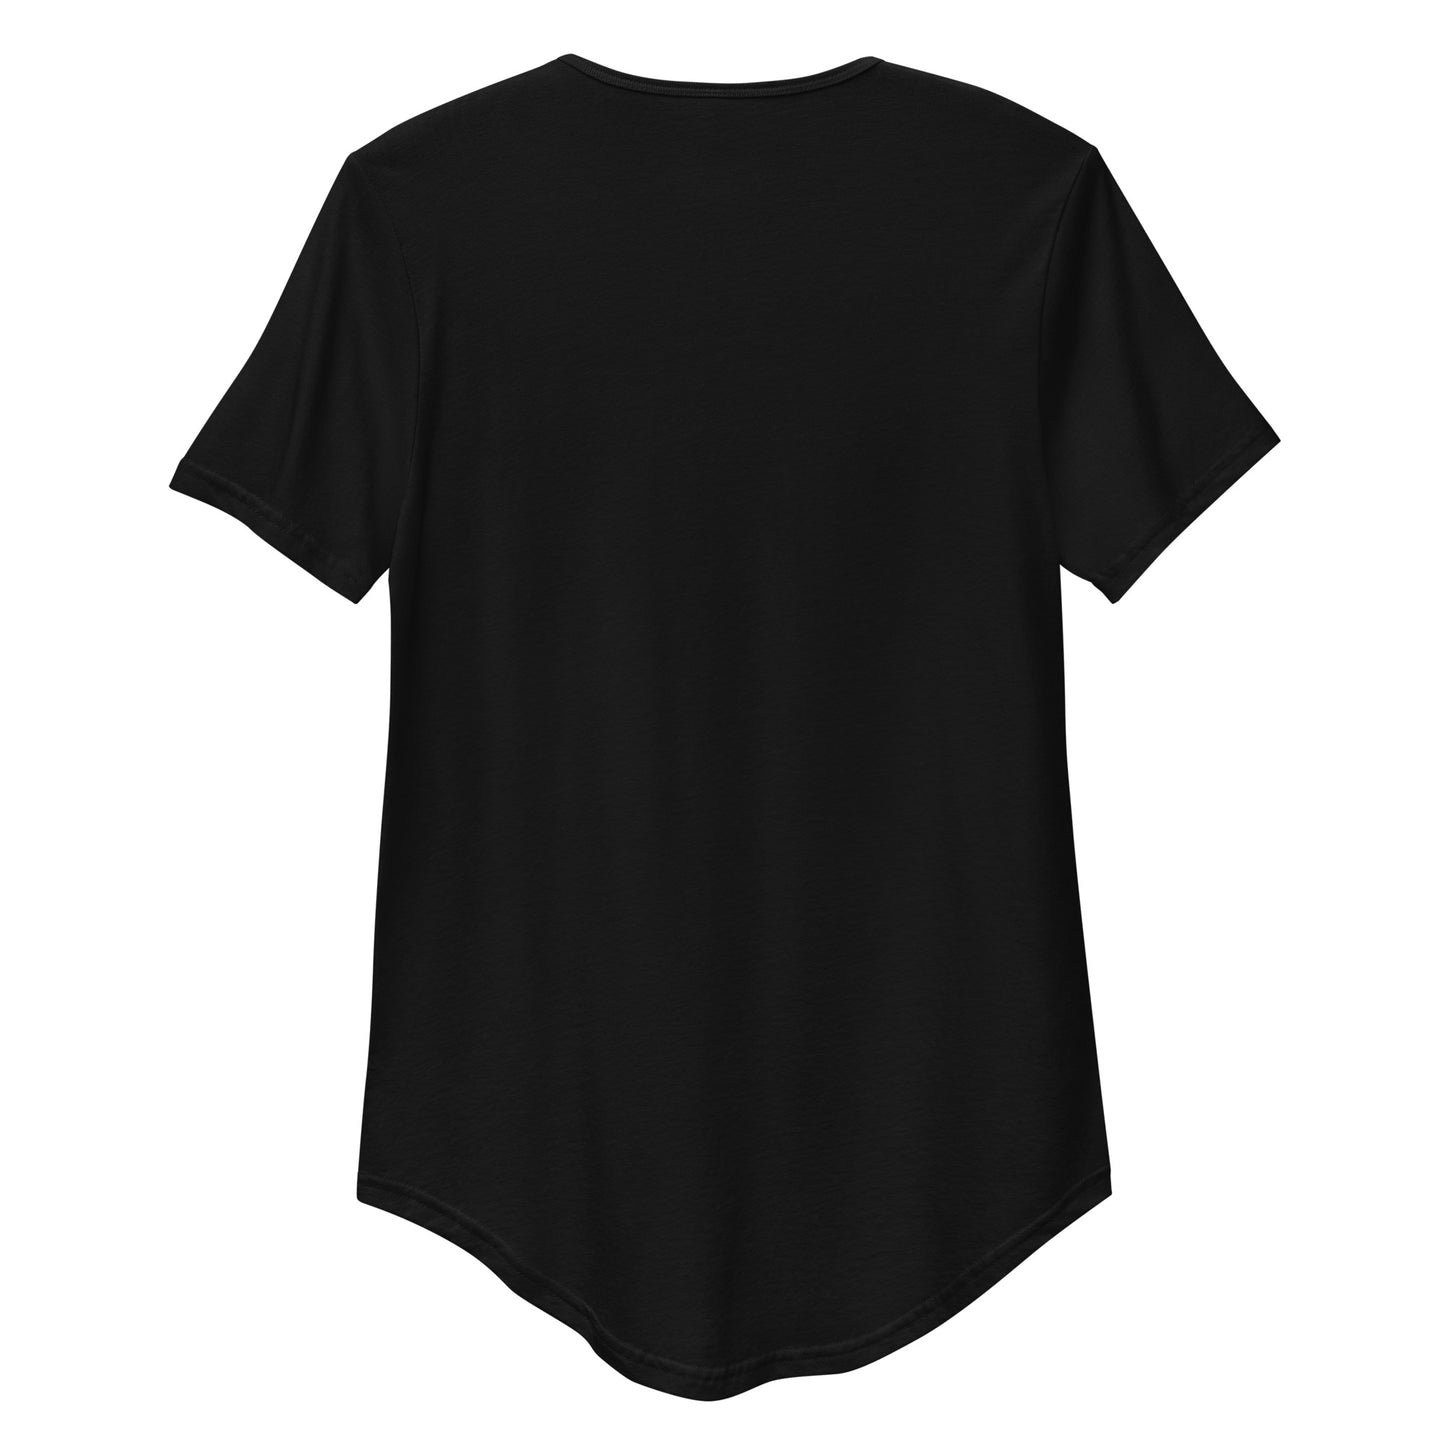 BJJ Couture Tartan Unixex Black & Tan Premium Curved Hem T-Shirt